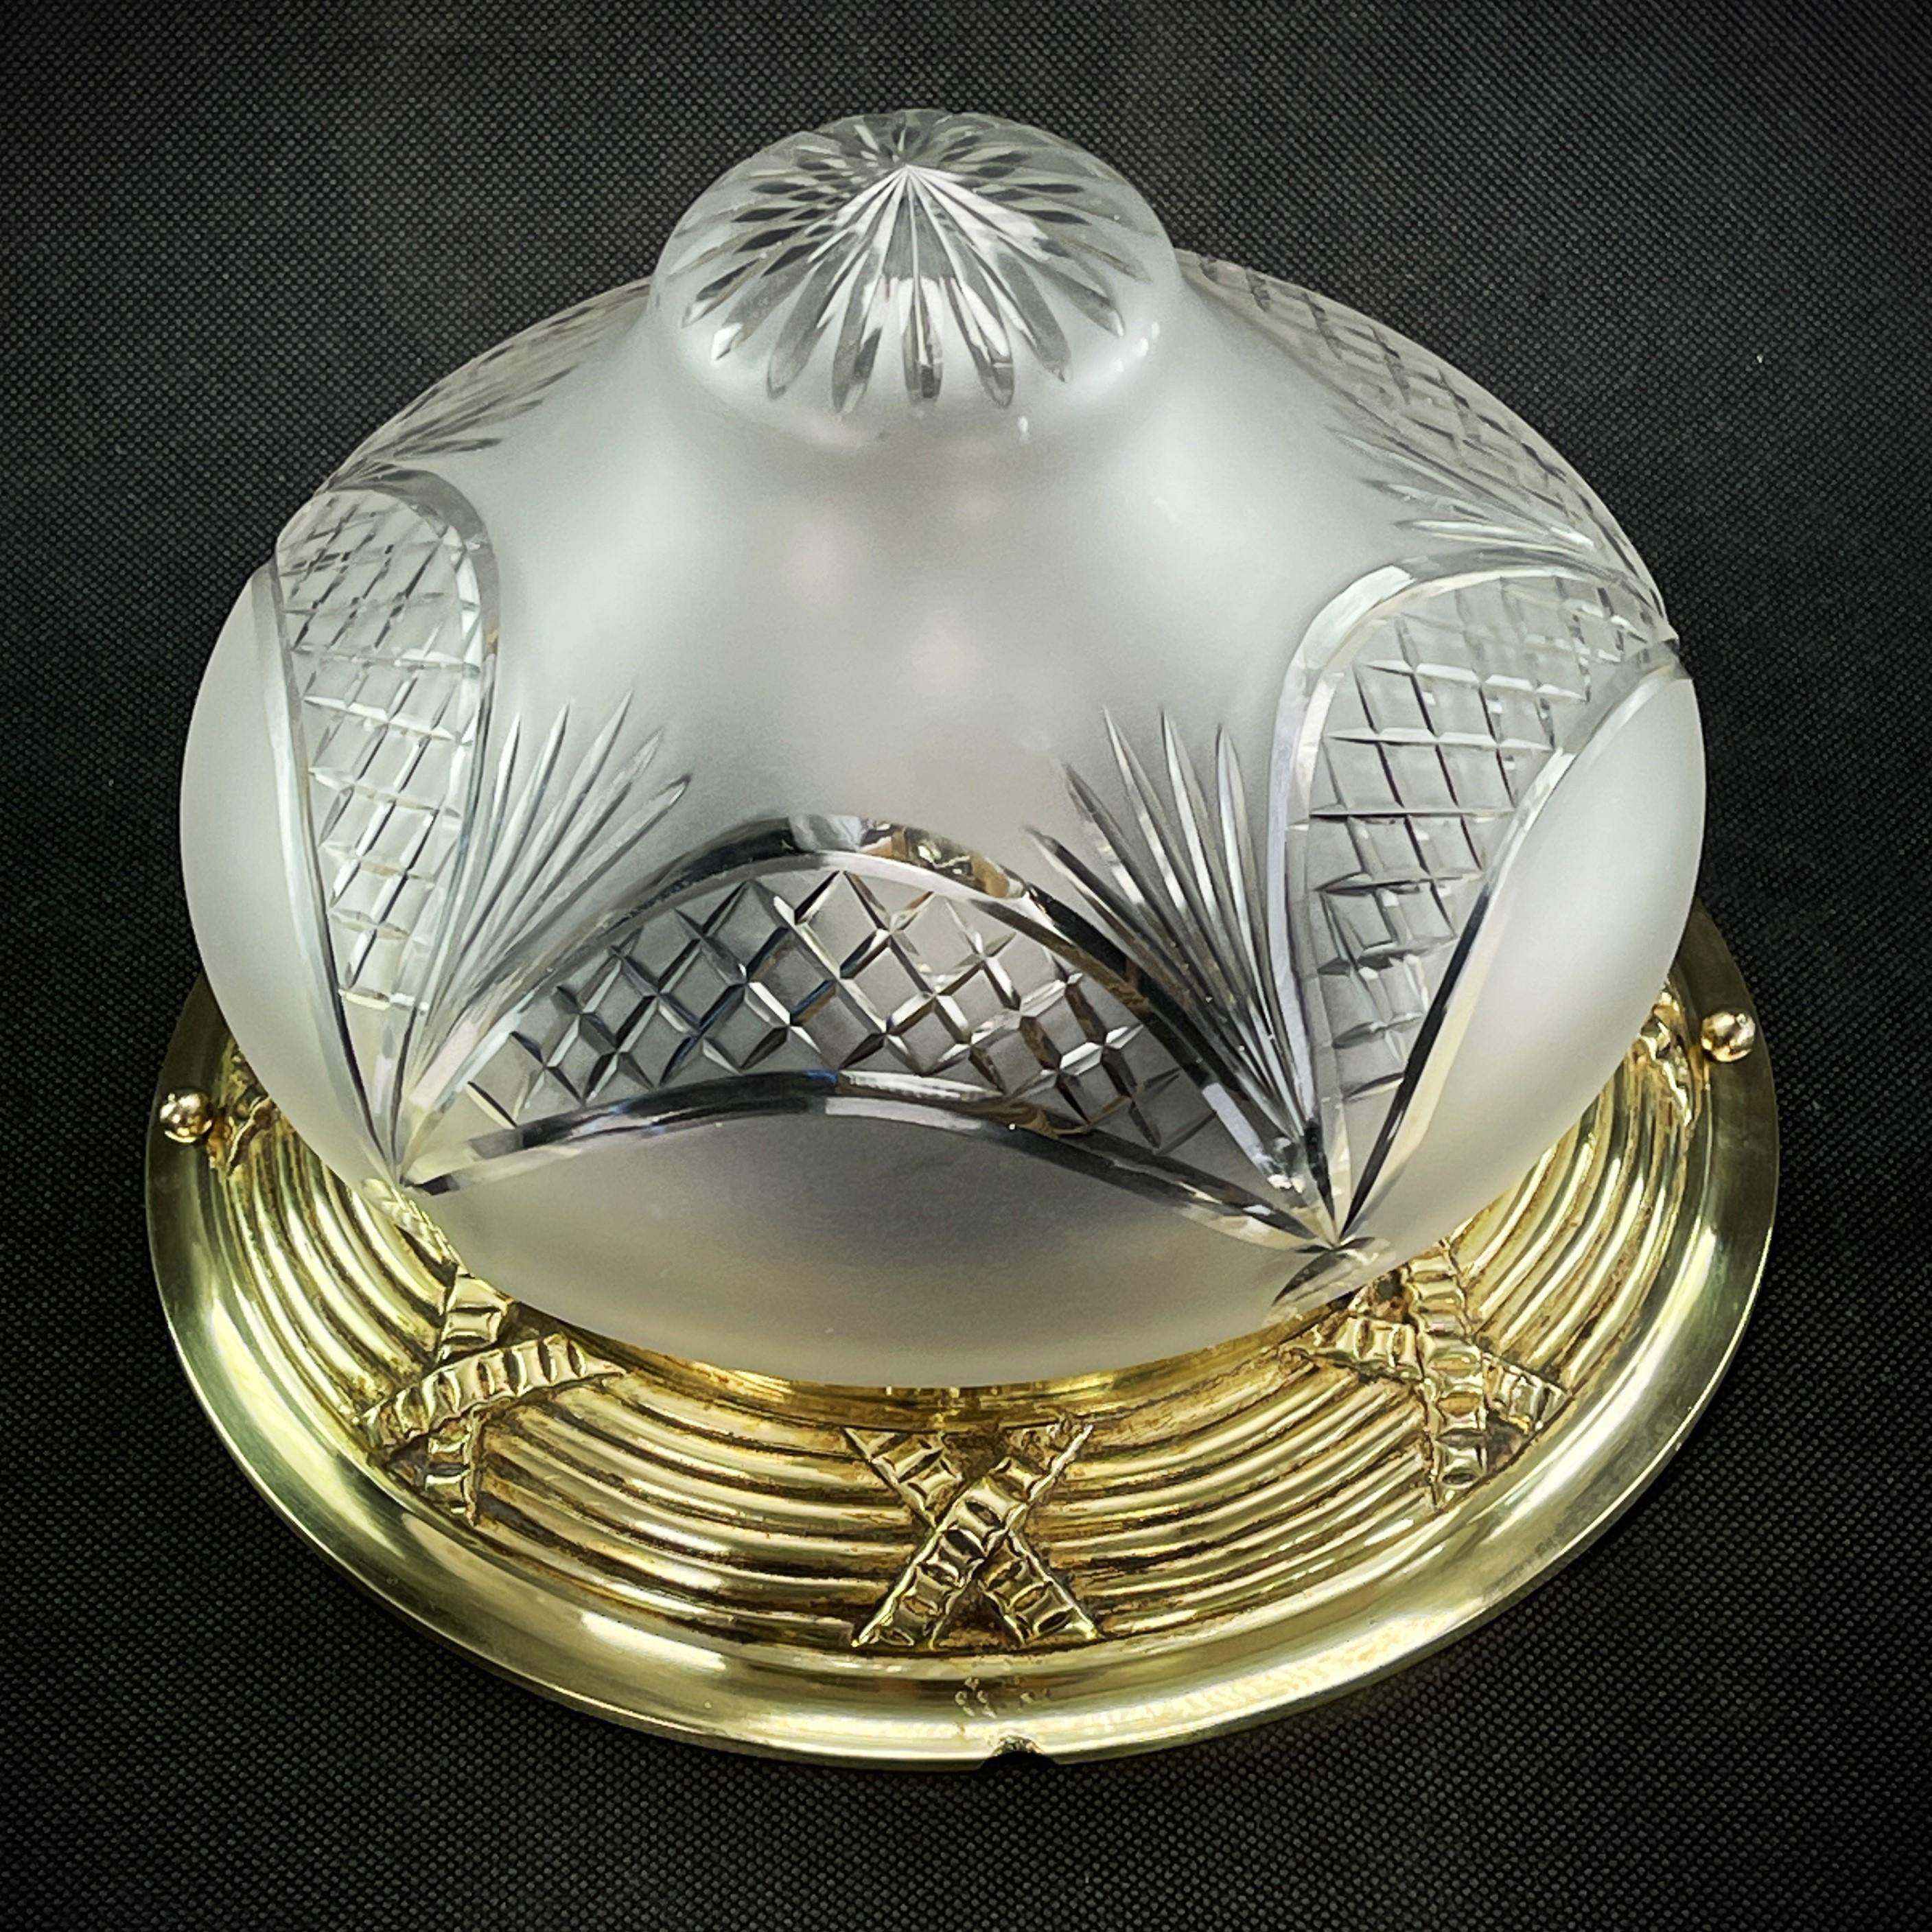 Jugendstil Plafoniere - 1910er Jahre

Die Leuchte ART NOUVEAU ist ein Designklassiker aus den 10er/20er Jahren. 
Die Bronzelampe ist ein Original und spendet ein angenehmes Licht.

Der gereinigte Gegenstand hat 1  x E27-Fassung und wiegt 1,9 kg /